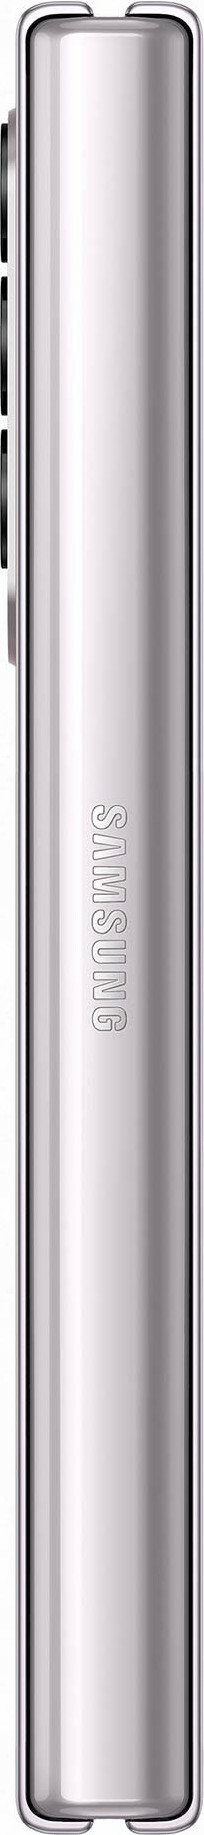 Samsung Galaxy Z Fold3 256GB